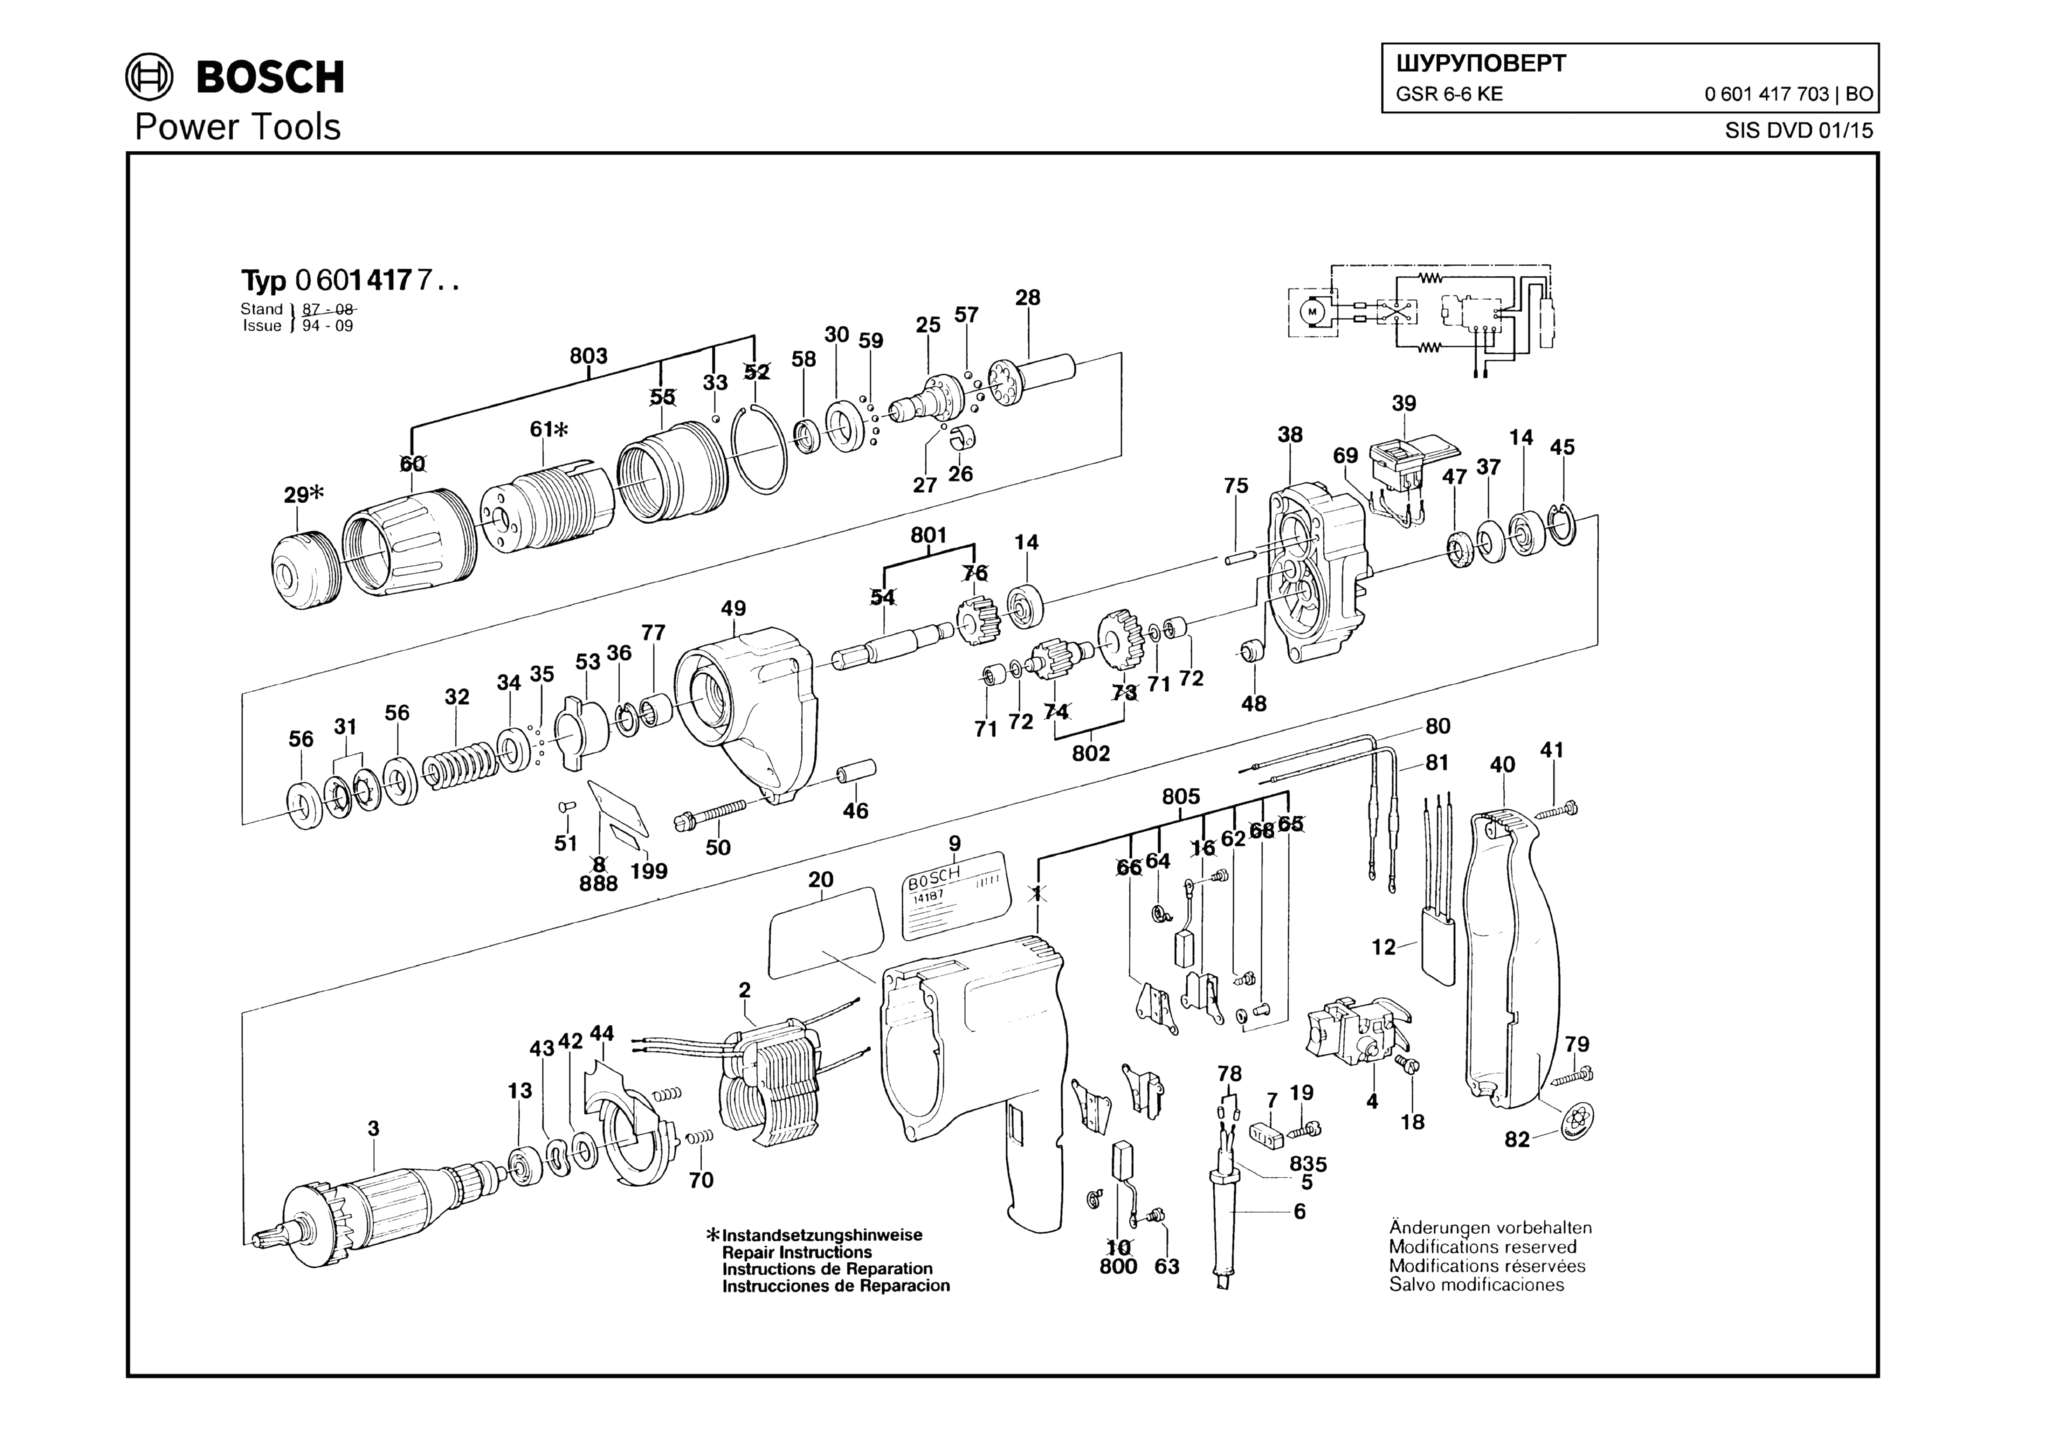 Запчасти, схема и деталировка Bosch GSR 6-6 KE (ТИП 0601417703)